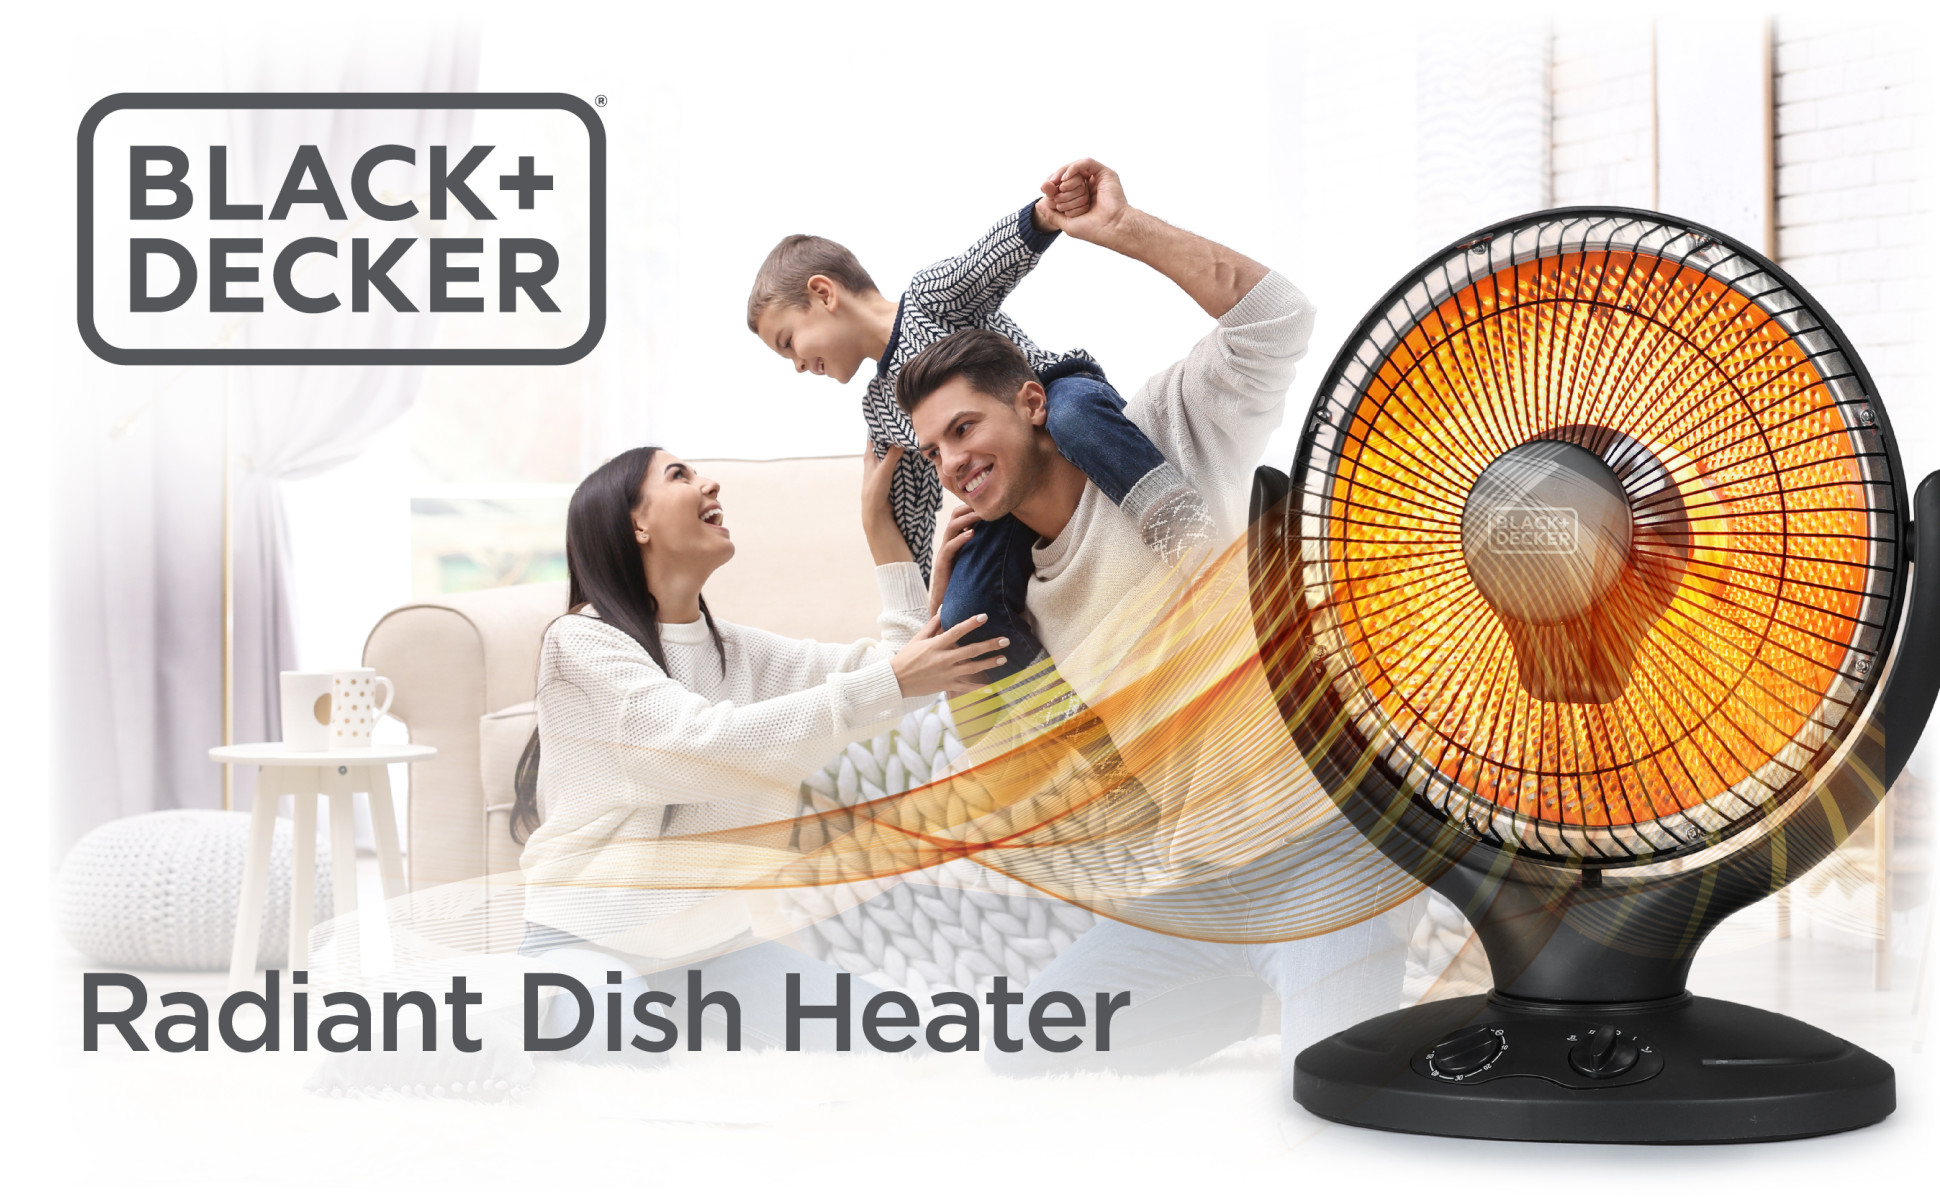 Black Decker 360 Surround Ceramic Heater 10 14 H x 7 58 W x 7 58 D